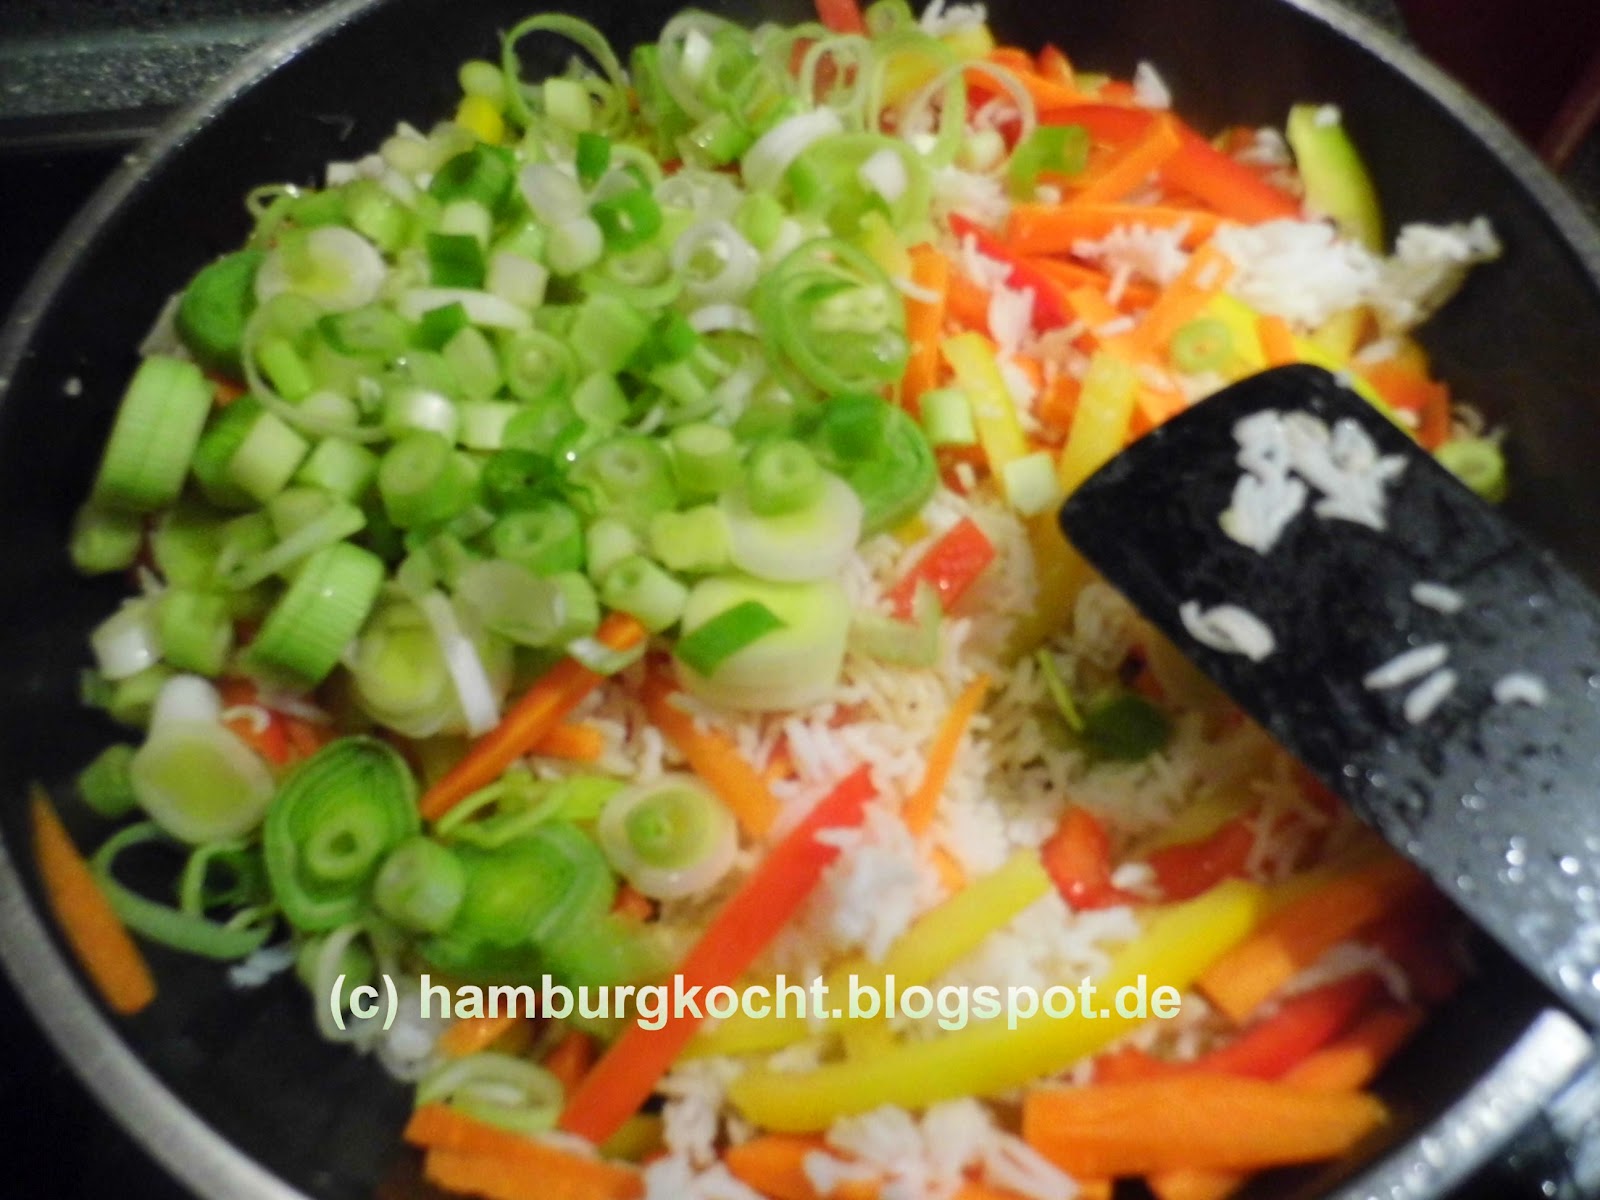 Hamburg kocht!: Kochen ohne Tüte: Nasi Goreng mit Hühnerfleisch und